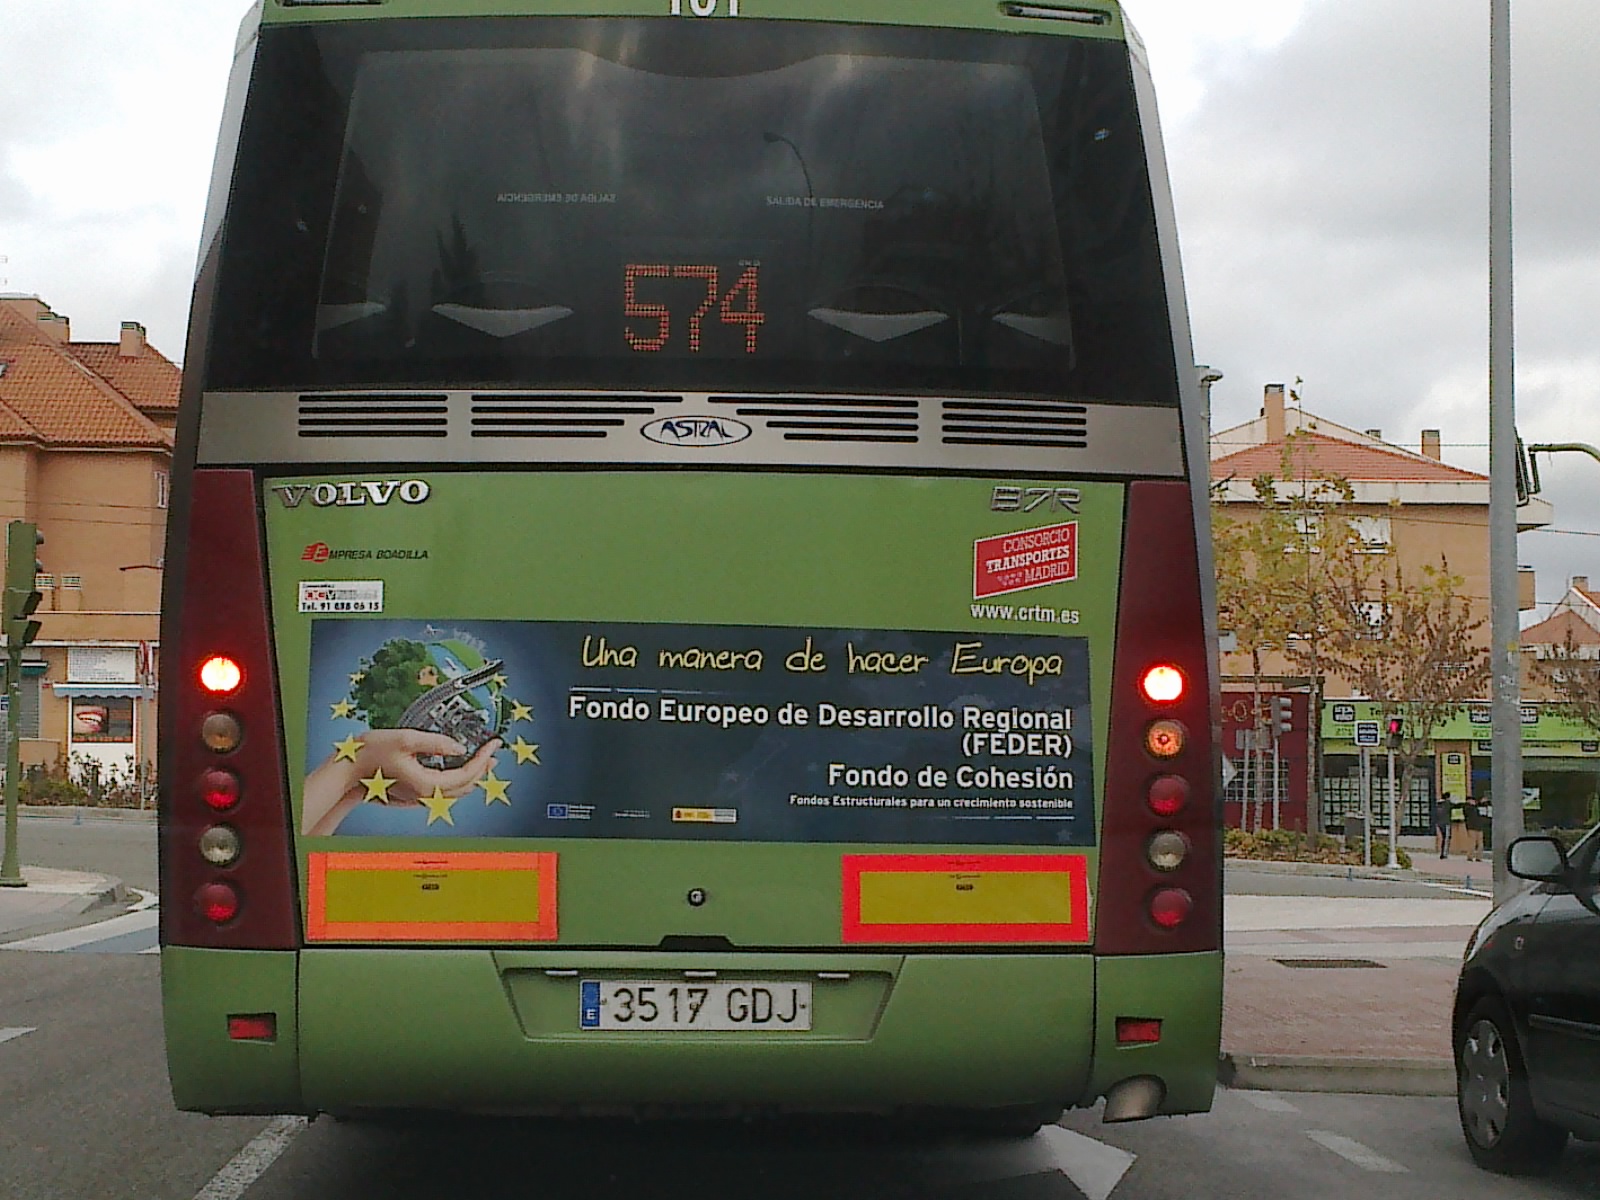 Posterior de autobus, amb la posterior de la campanya per al fons estructural del desenvolupament sostenible